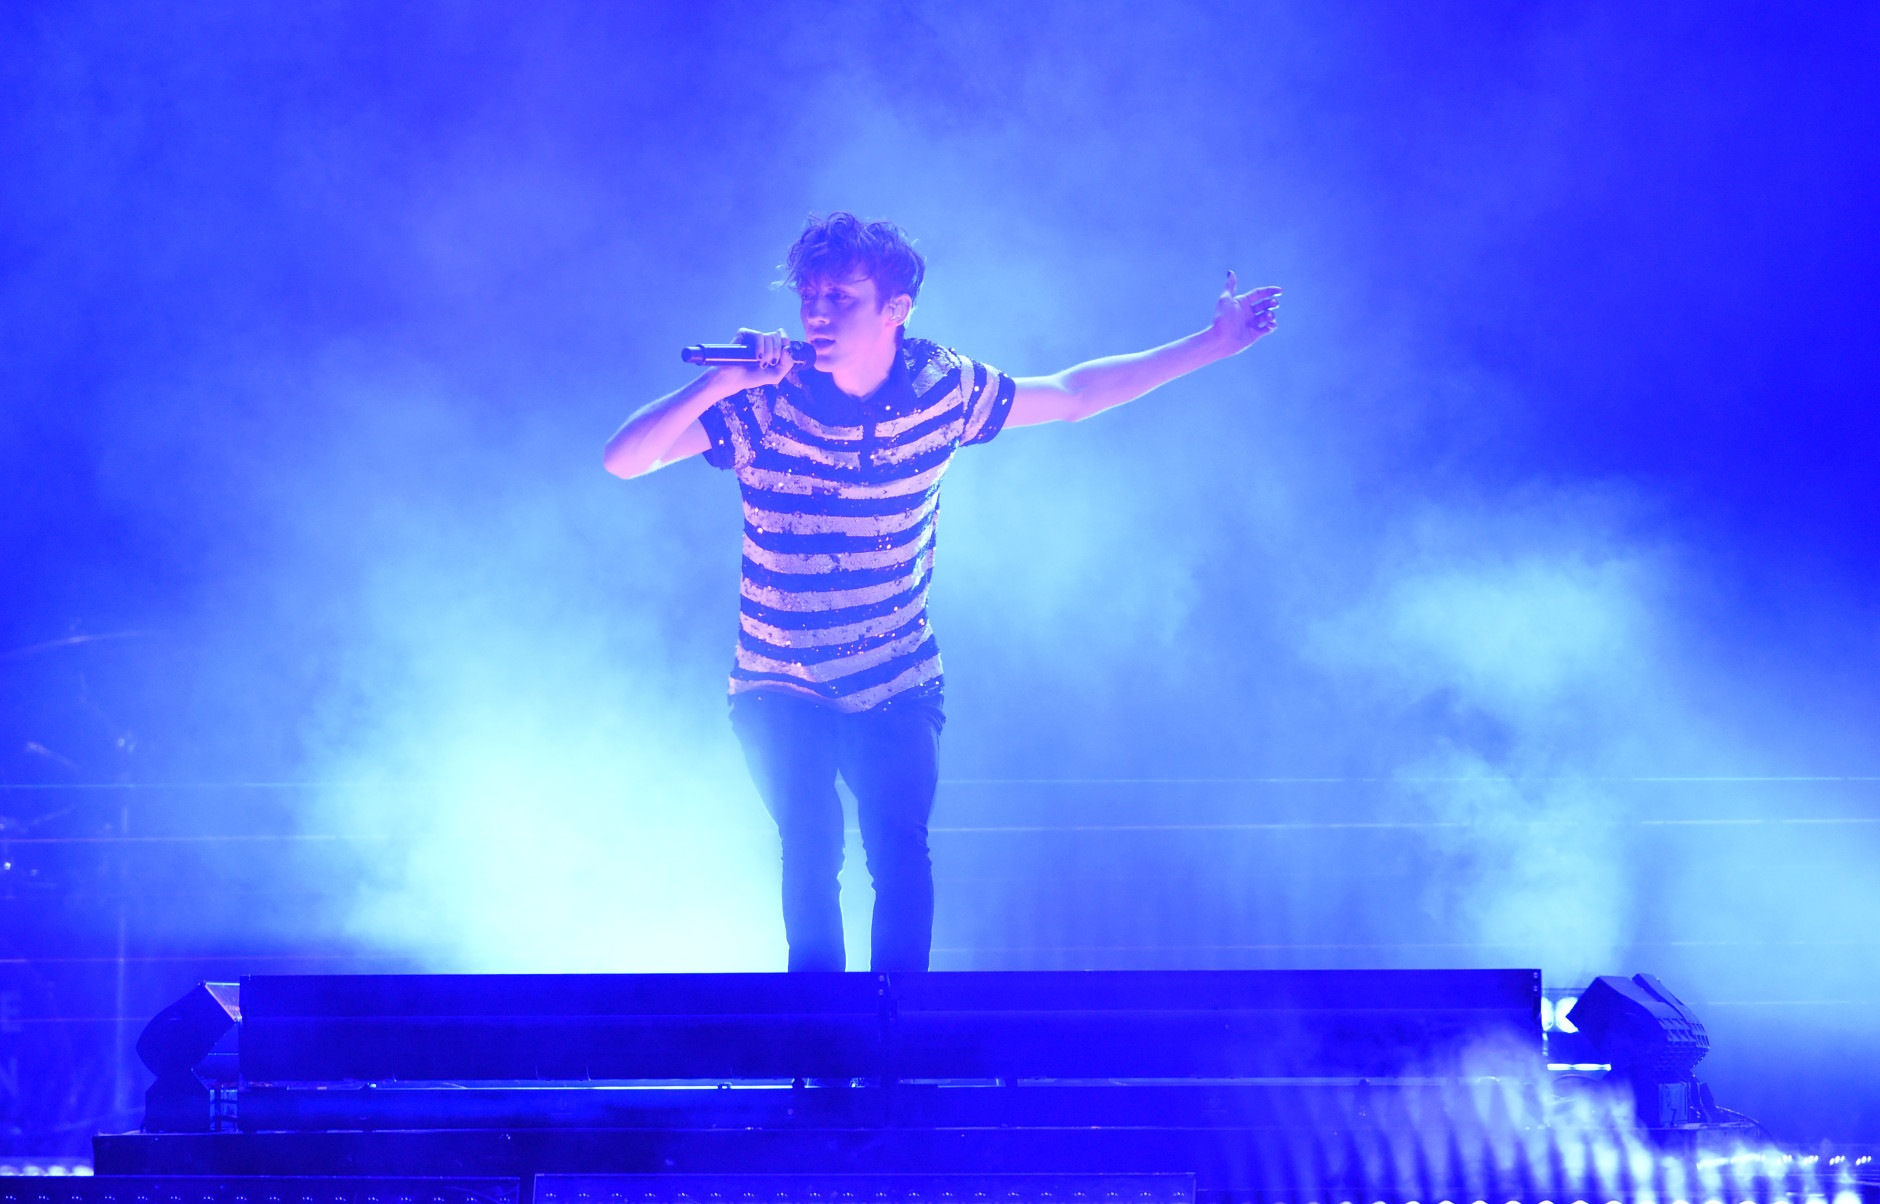 Troye Sivan, winner of the emerging artist award, performs Youth at the Billboard Music Awards at the T-Mobile Arena on Sunday, May 22, 2016, in Las Vegas. (Photo by Chris Pizzello/Invision/AP)